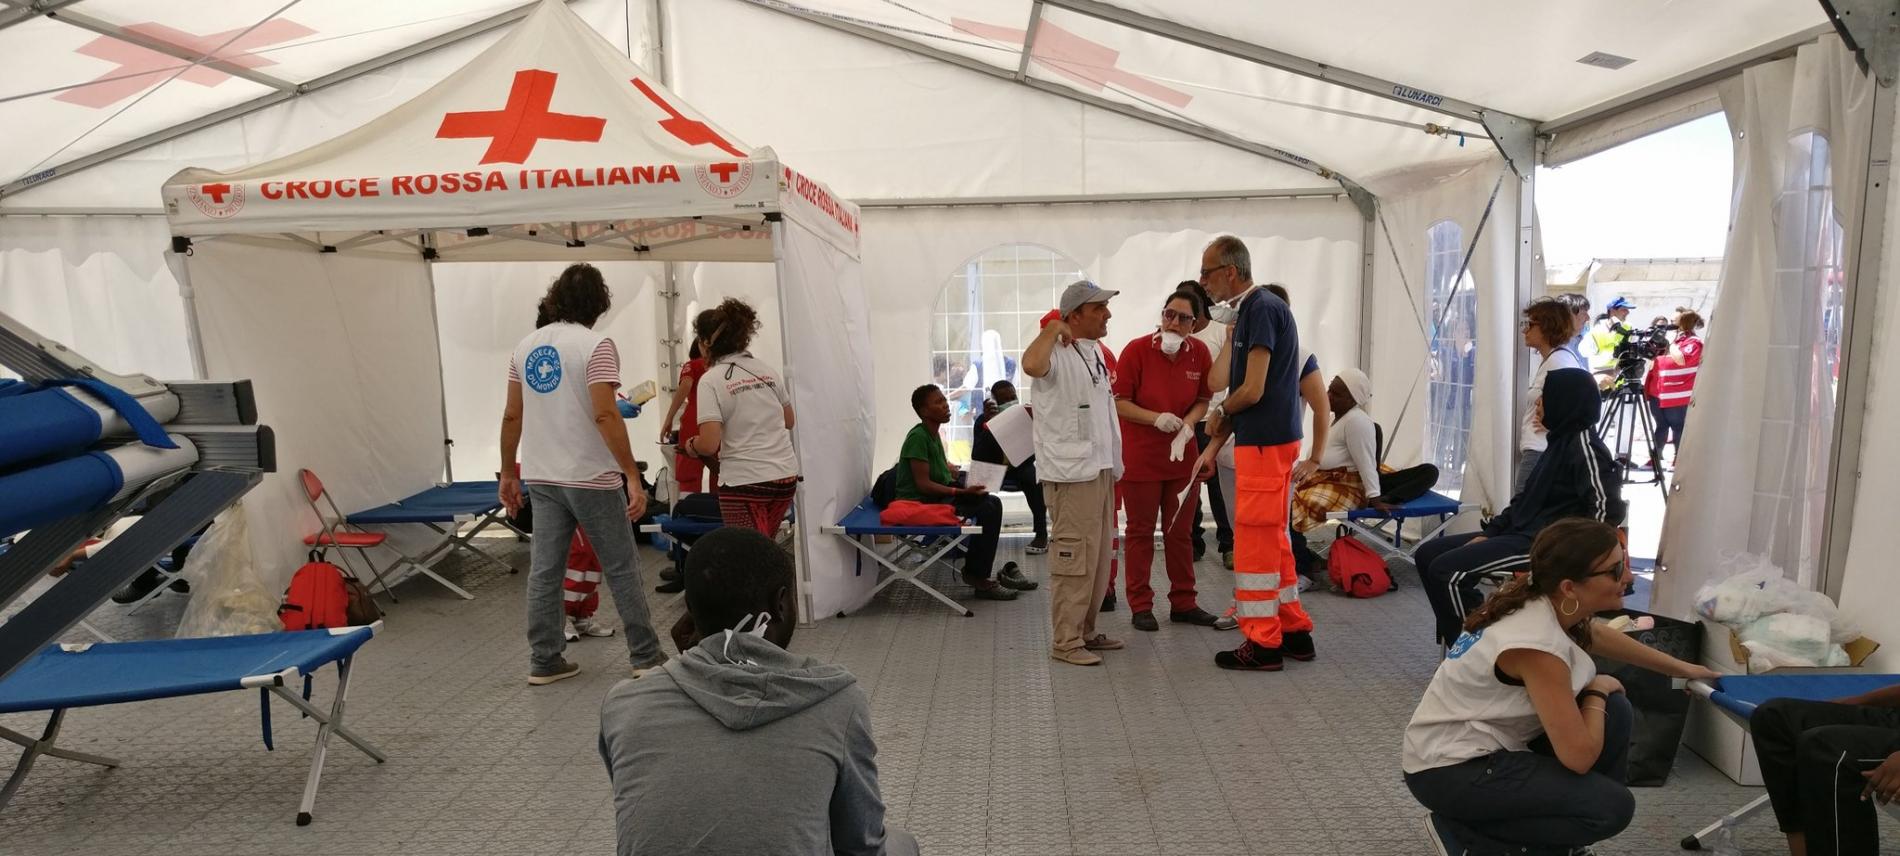 Ärzte der Welt unterstützt italienische Behörden in Kalabrien bei der medizinischen Versorgung von Bootsflüchtlingen. Foto: Ärzte der Welt